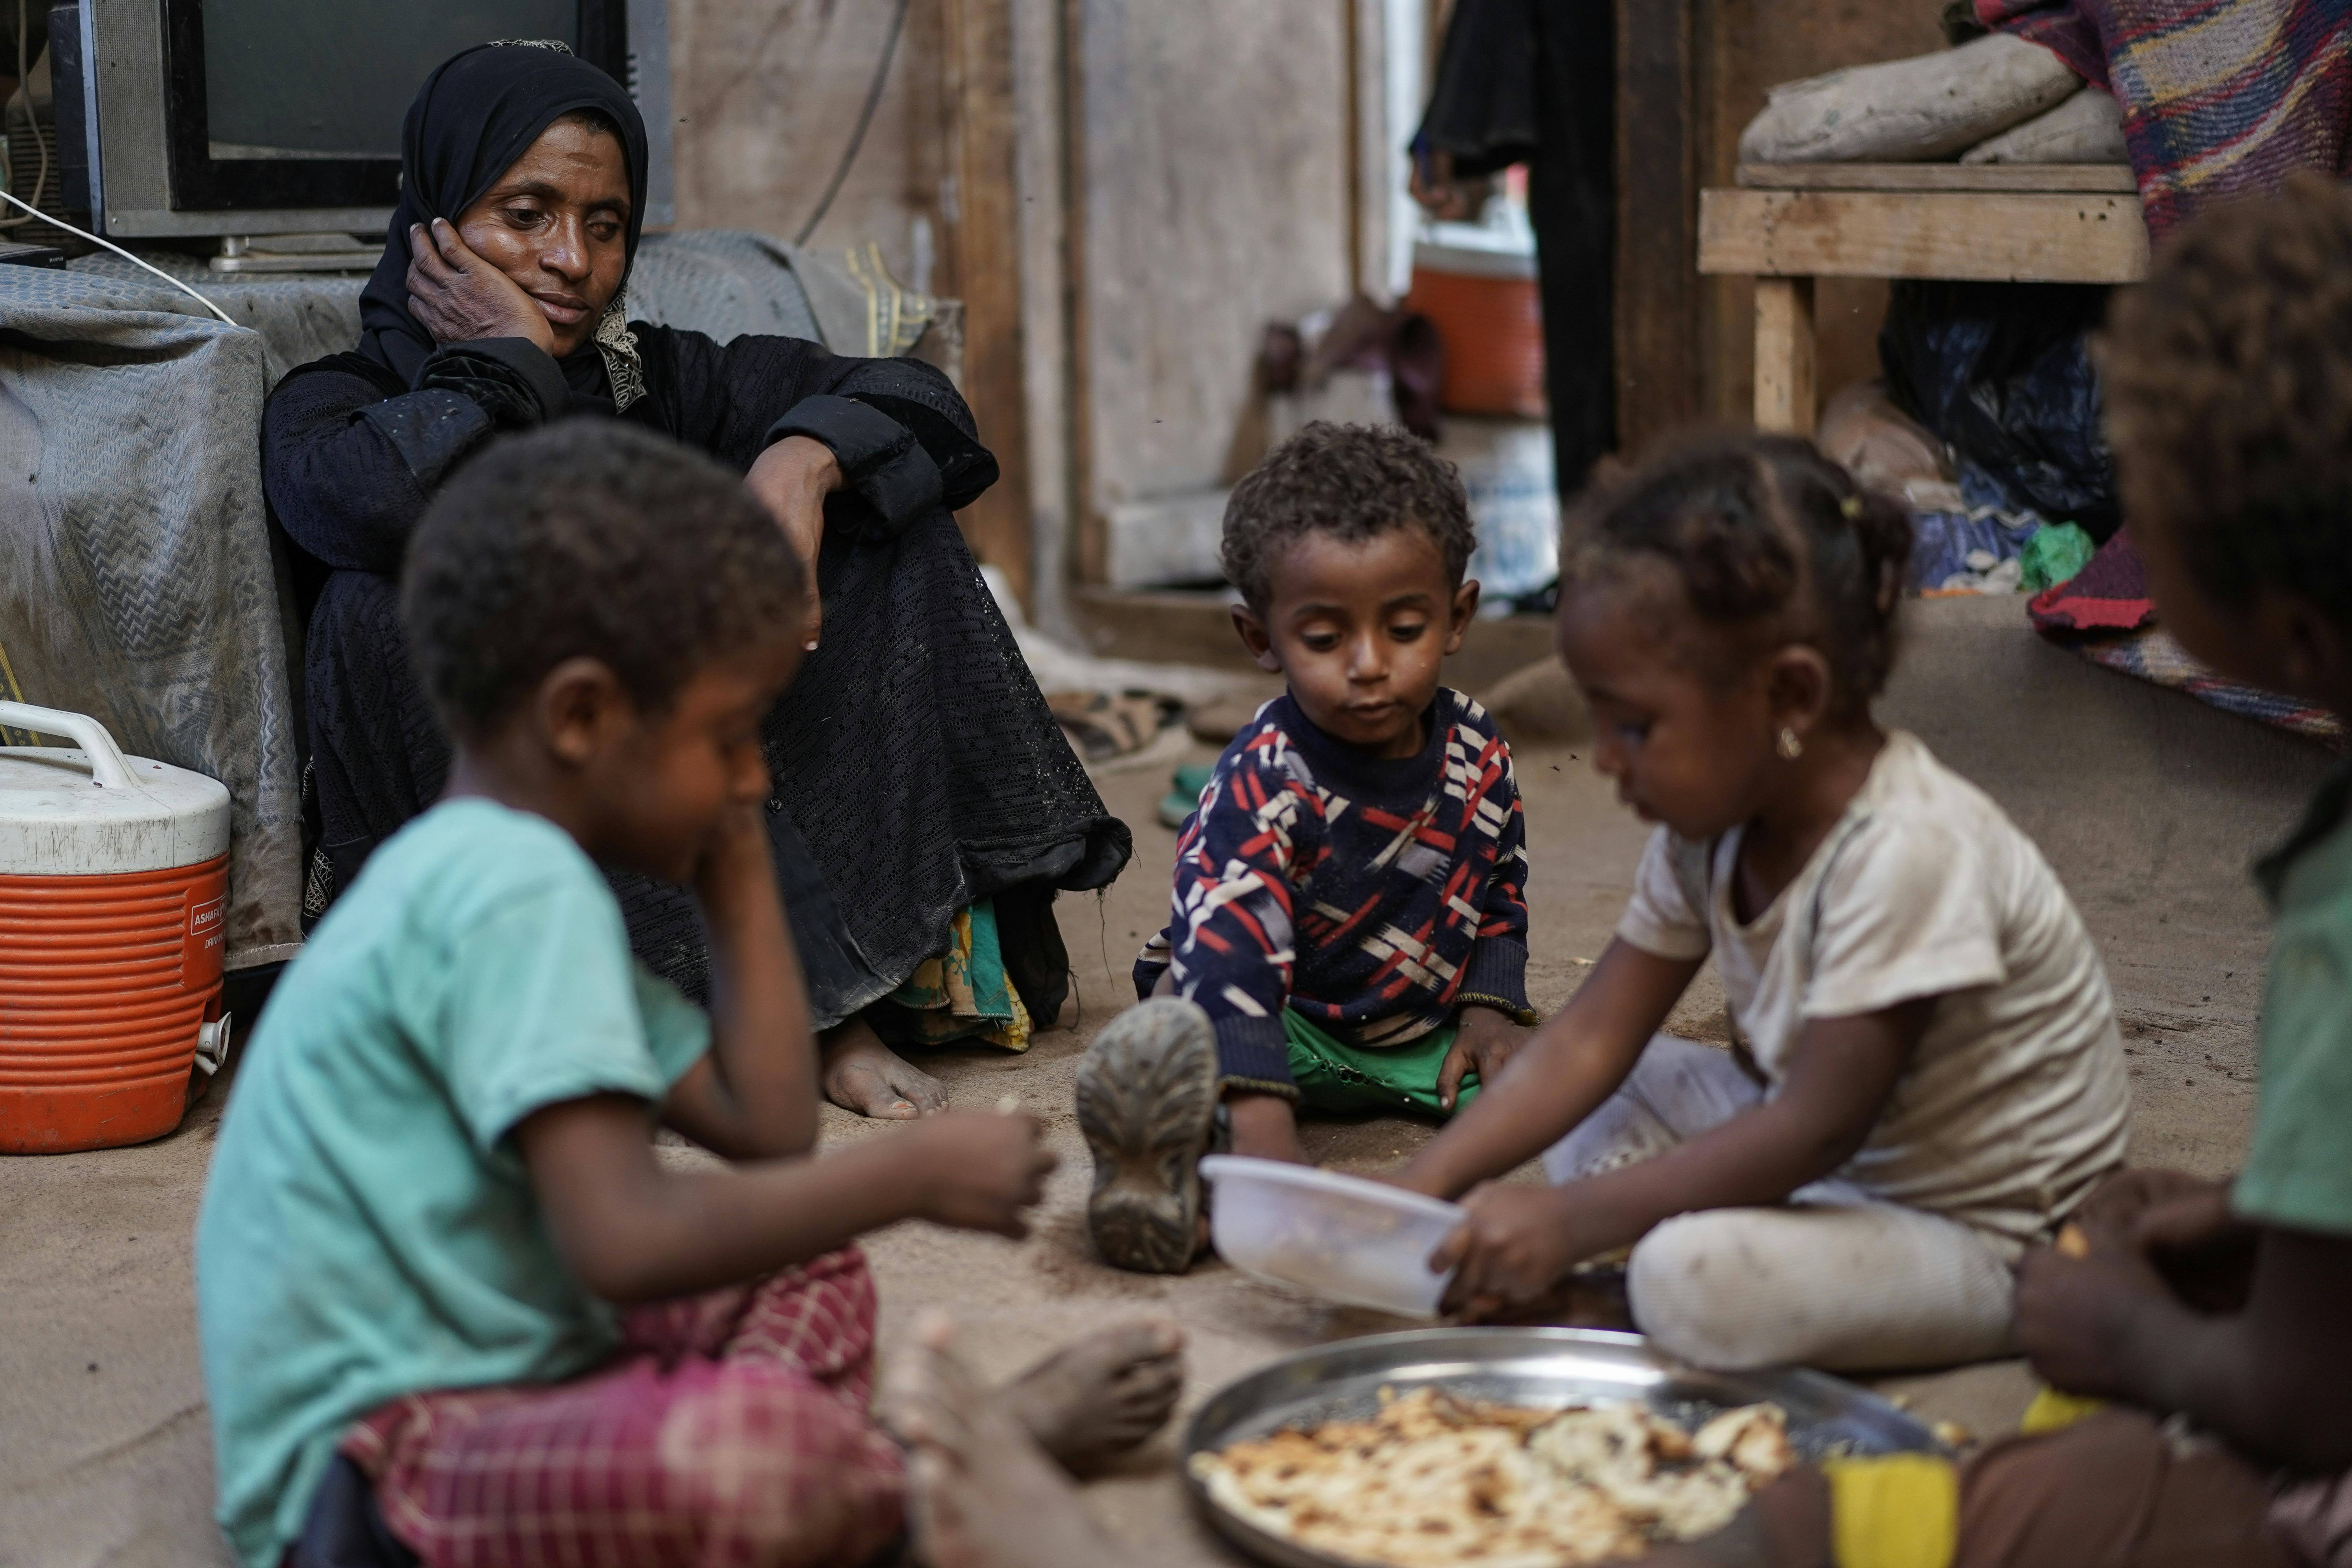 Yemen, Fatima Muhammed Saeed, 35 anni, guarda i suoi figli mangiare un pasto che ha preparato per loro. Sono sfollati a causa del conflitto in corso e lei è malnutrita: non c'è abbastanza cibo per tutti